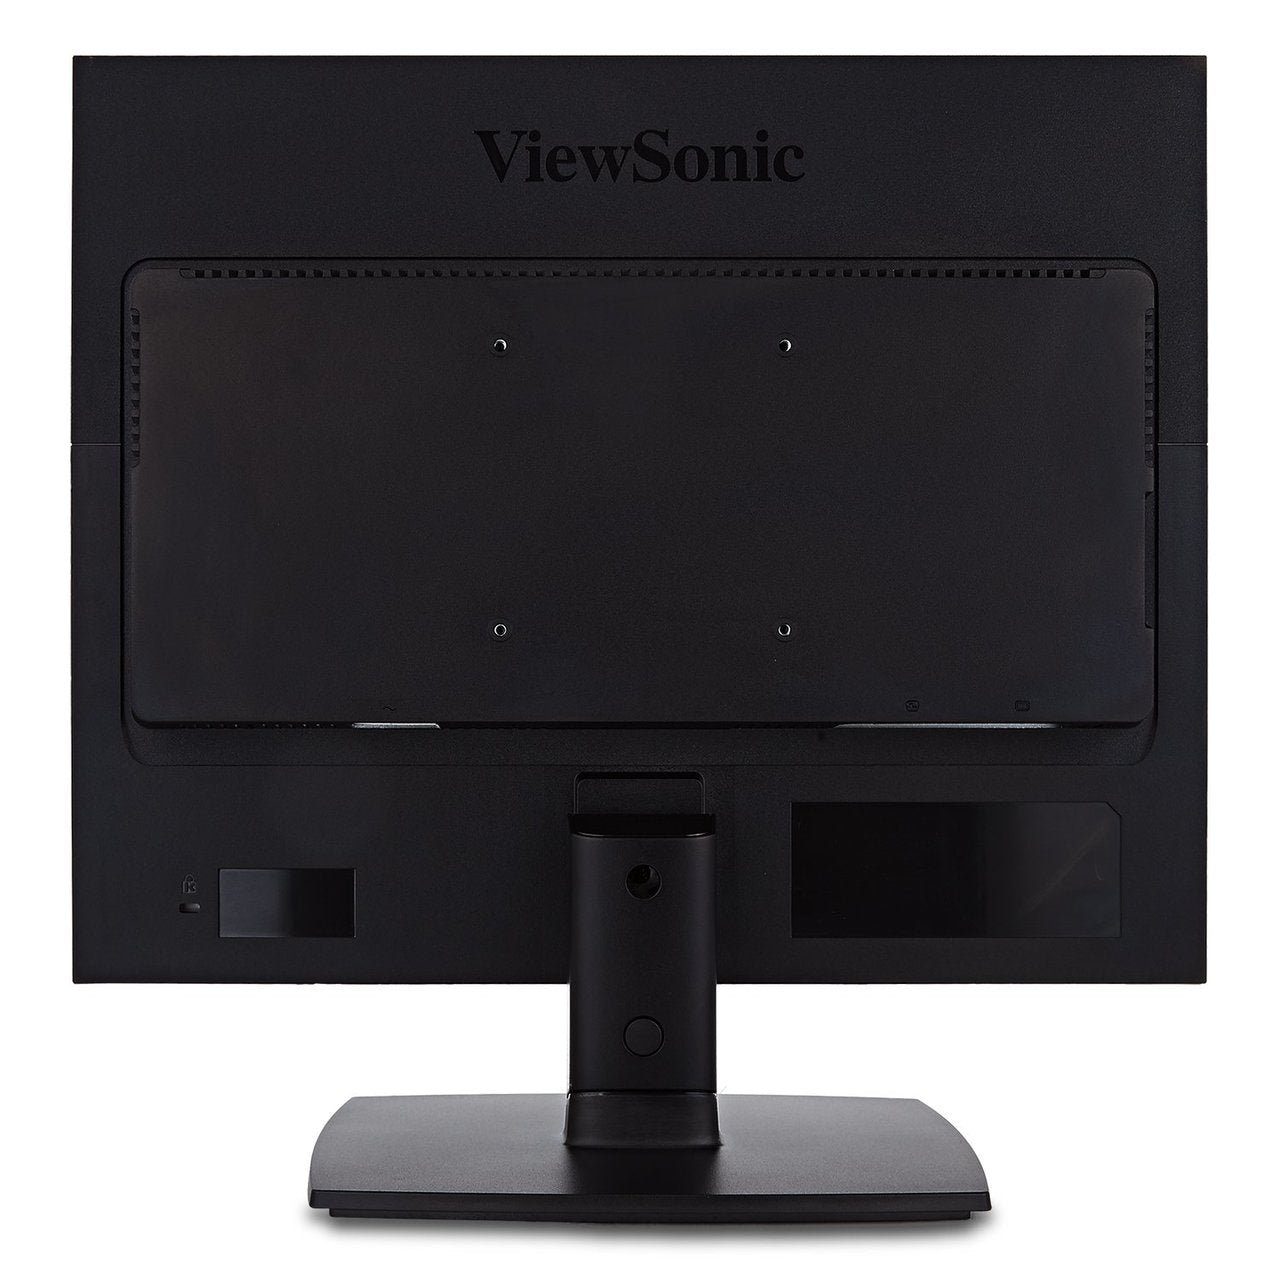 ViewSonic VA951S-S 19" IPS 1024p LED Monitor - Certified Refurbished